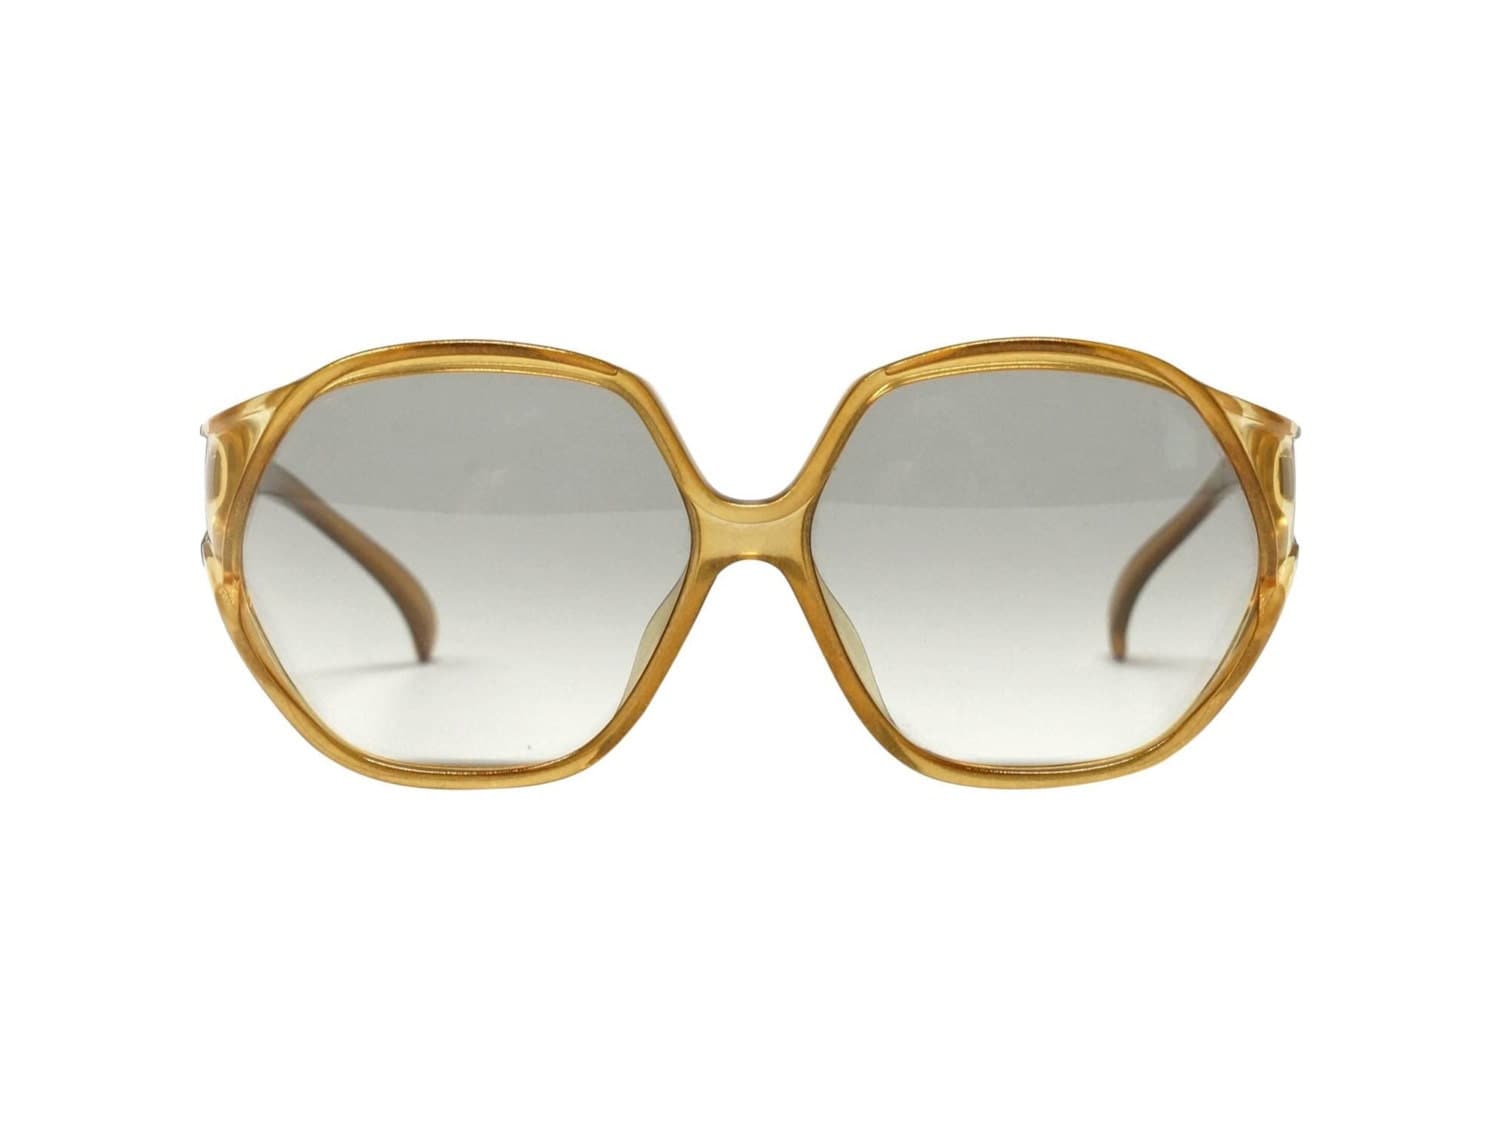 Vintage Oversized Dior Sunglasses 70s desinger eyeglasses